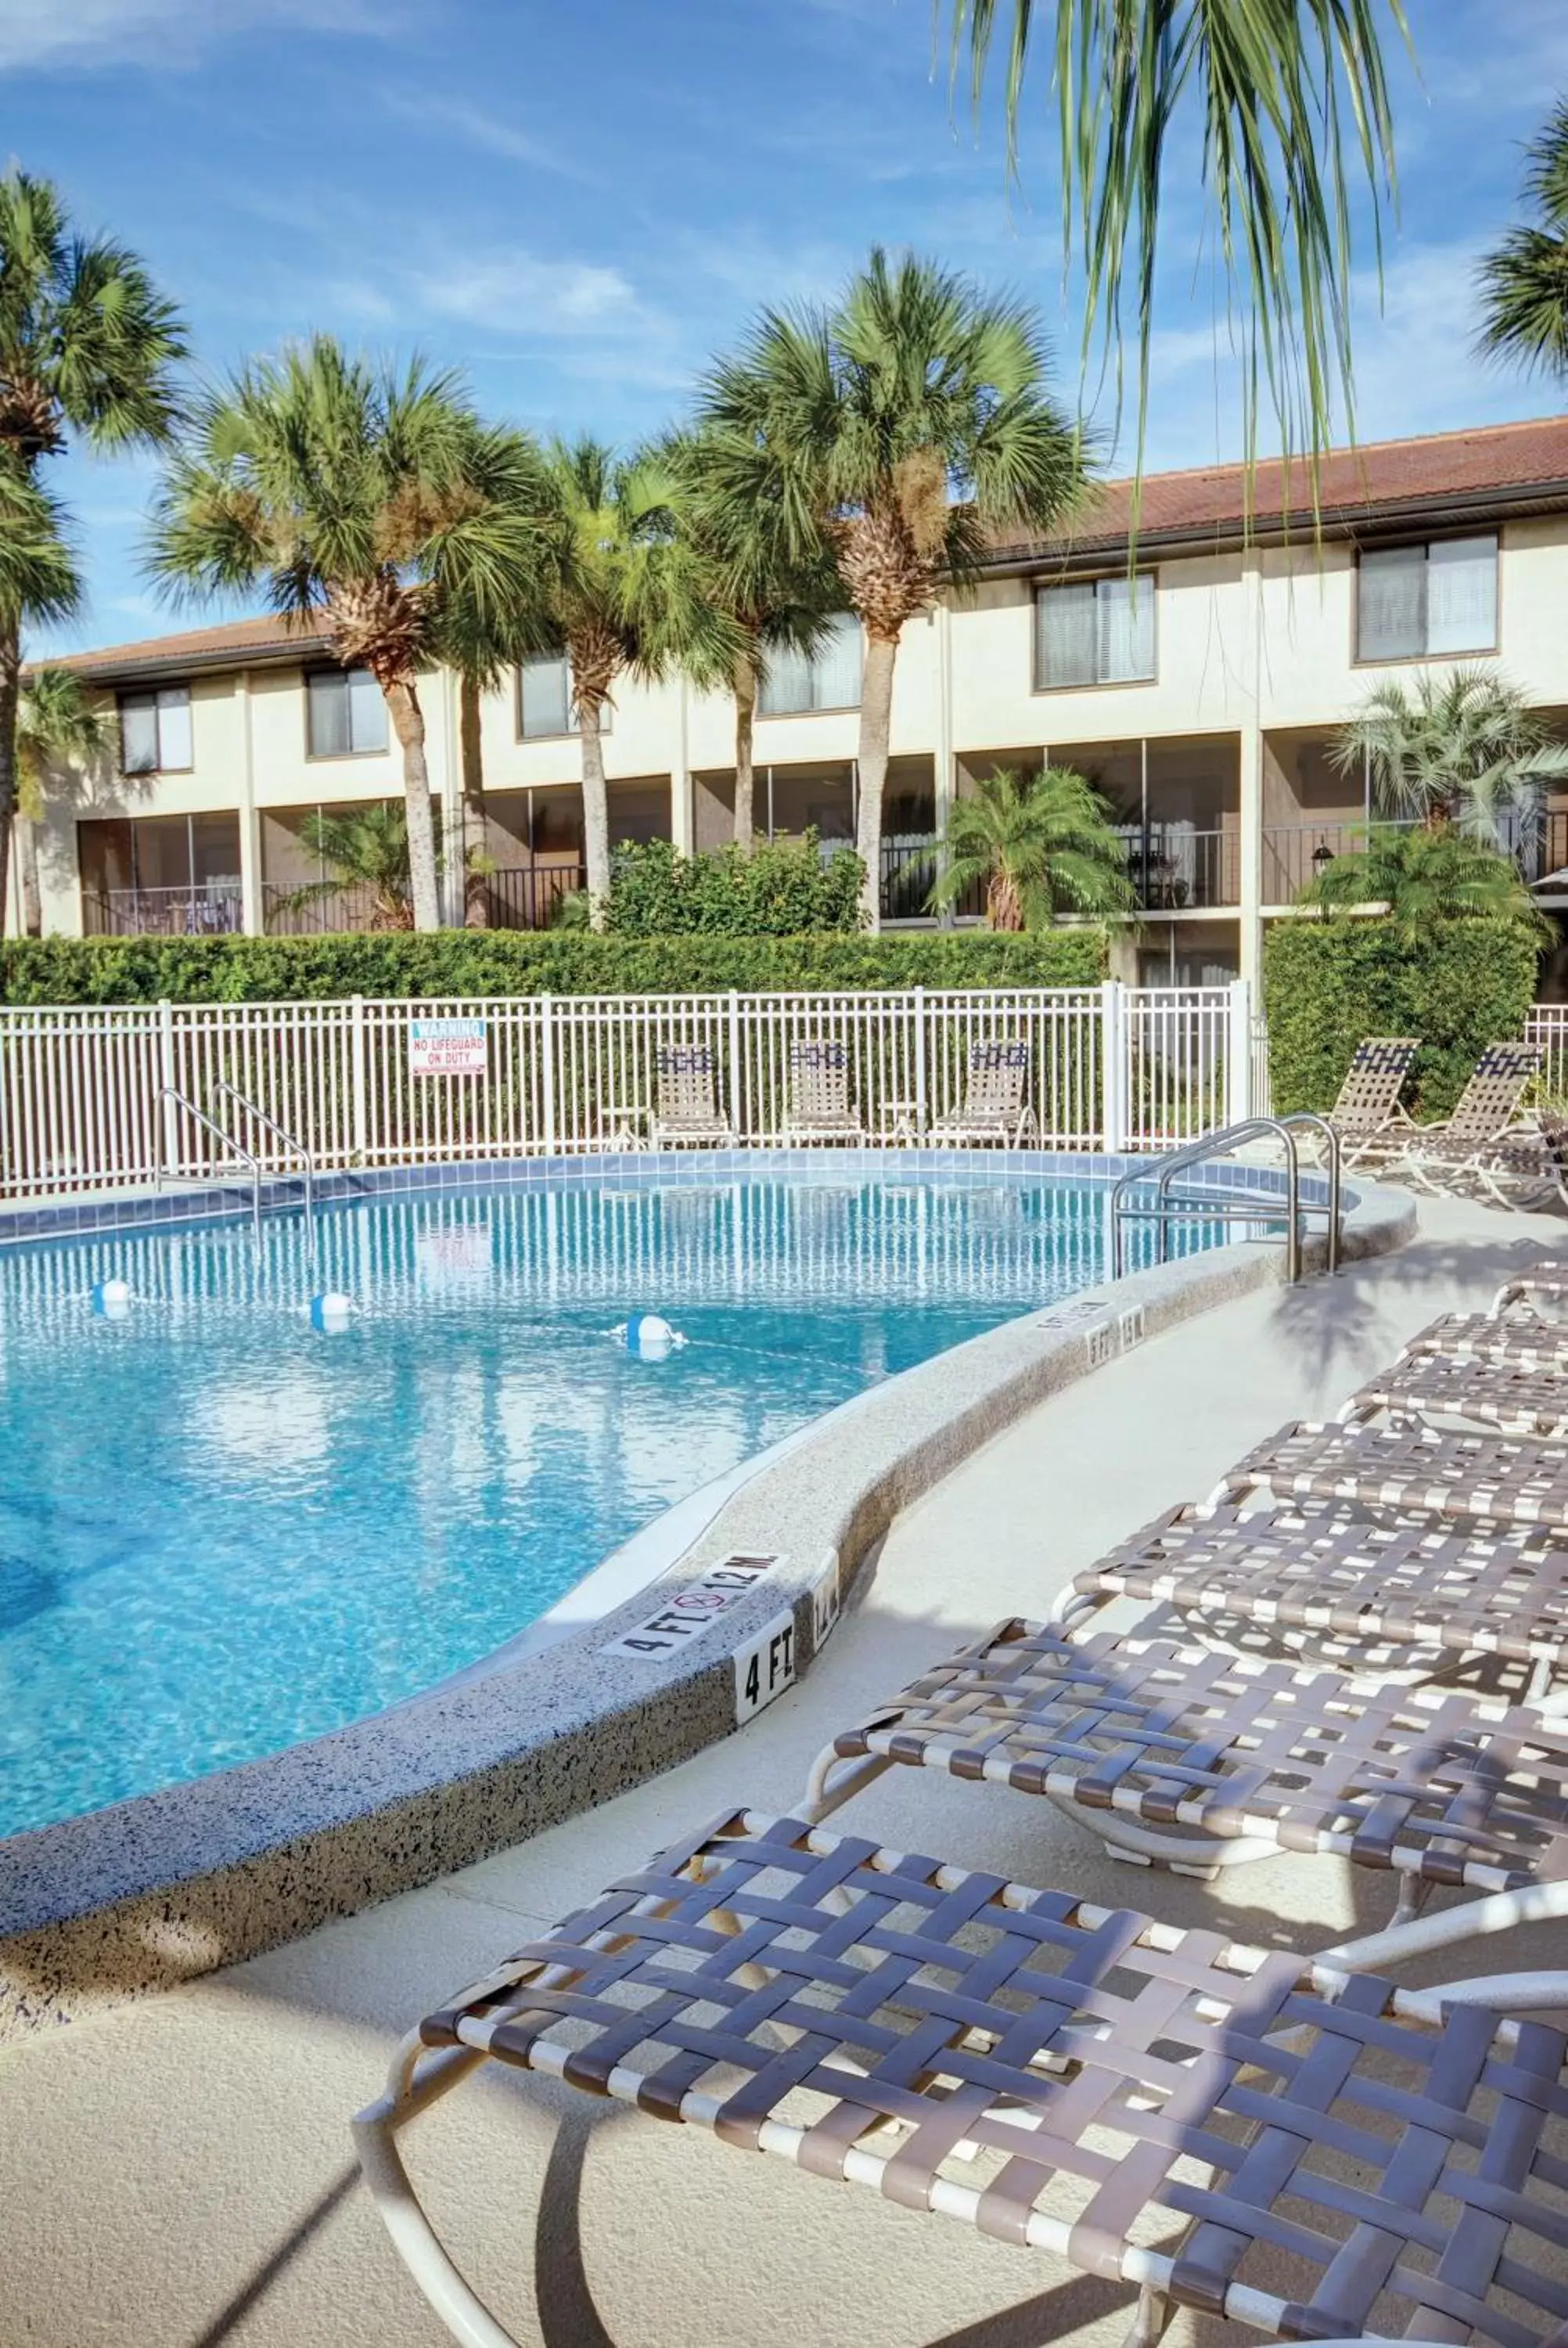 Swimming Pool in Club Wyndham Orlando International